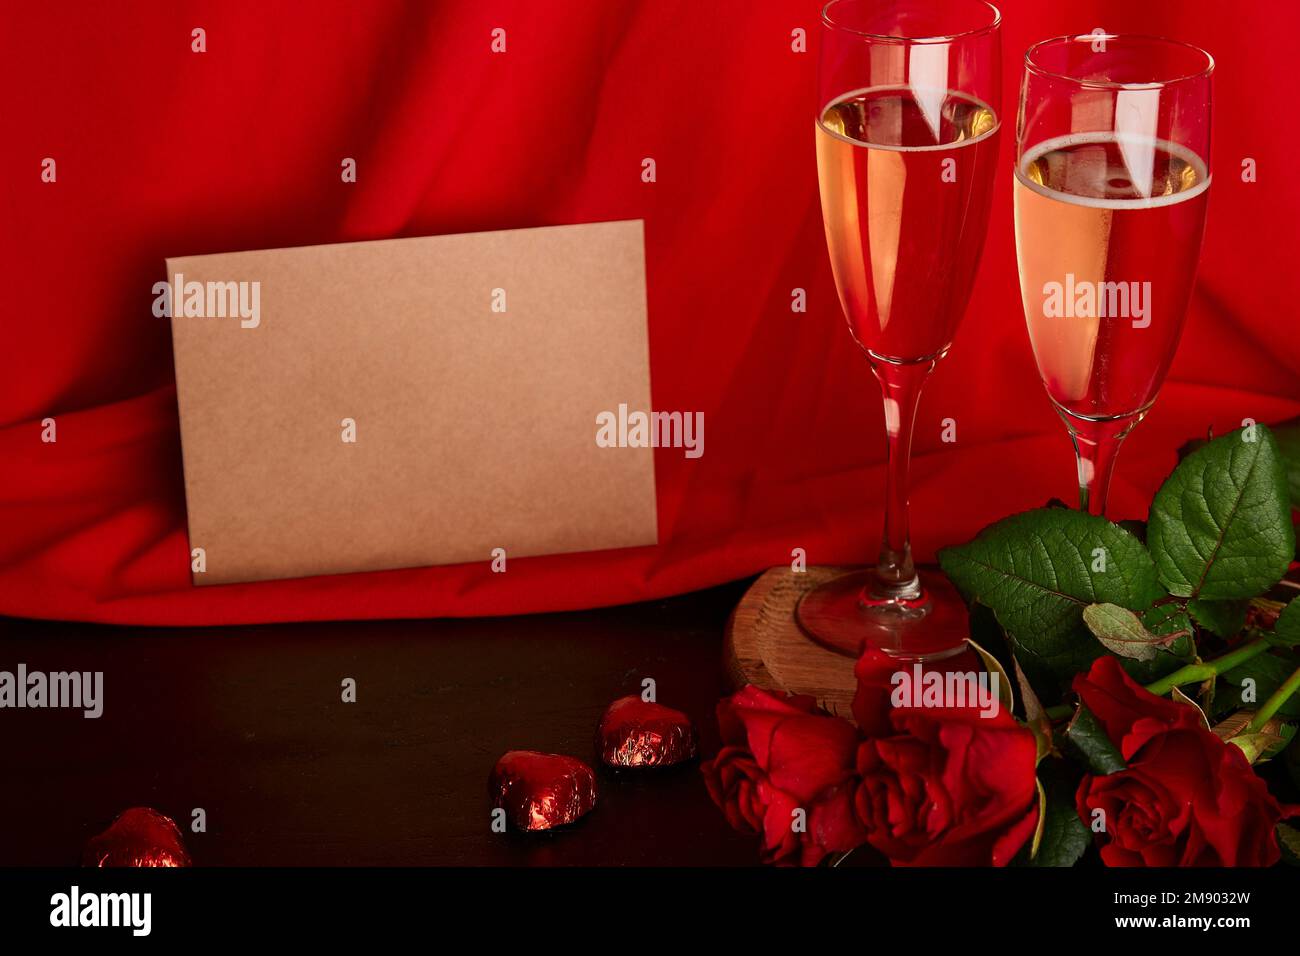 Estetica San Valentino cartolina mockup. Cena romantica di stagione rossa con cartolina, bicchieri di champagne, rose rosse e caramelle al cioccolato. Foto Stock